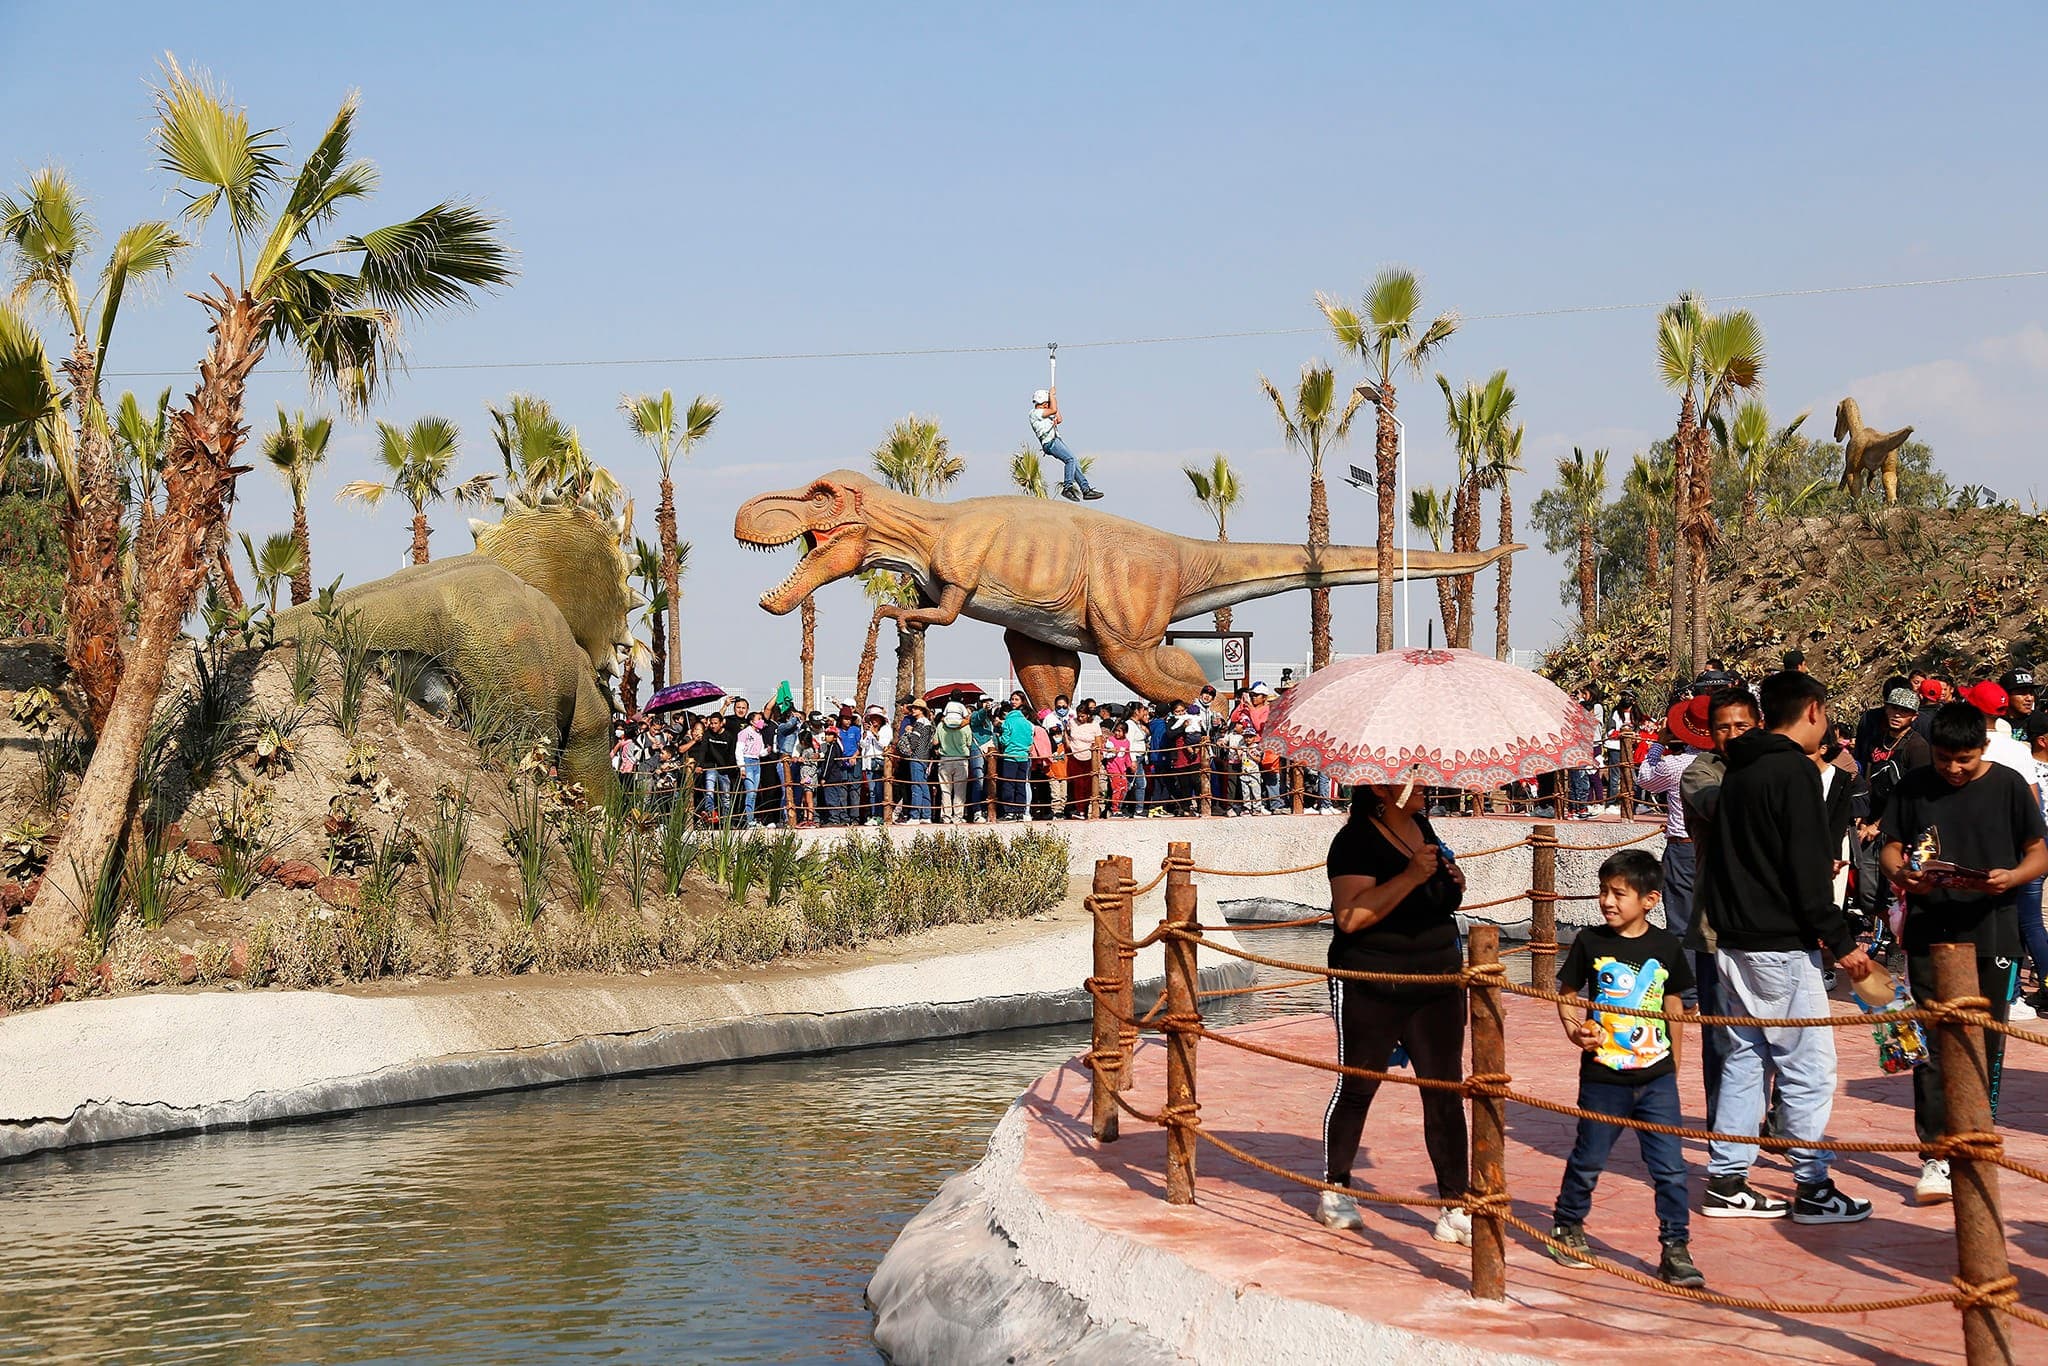 Chimalpark, una experiencia jurásica mexiquense que no puedes perderte